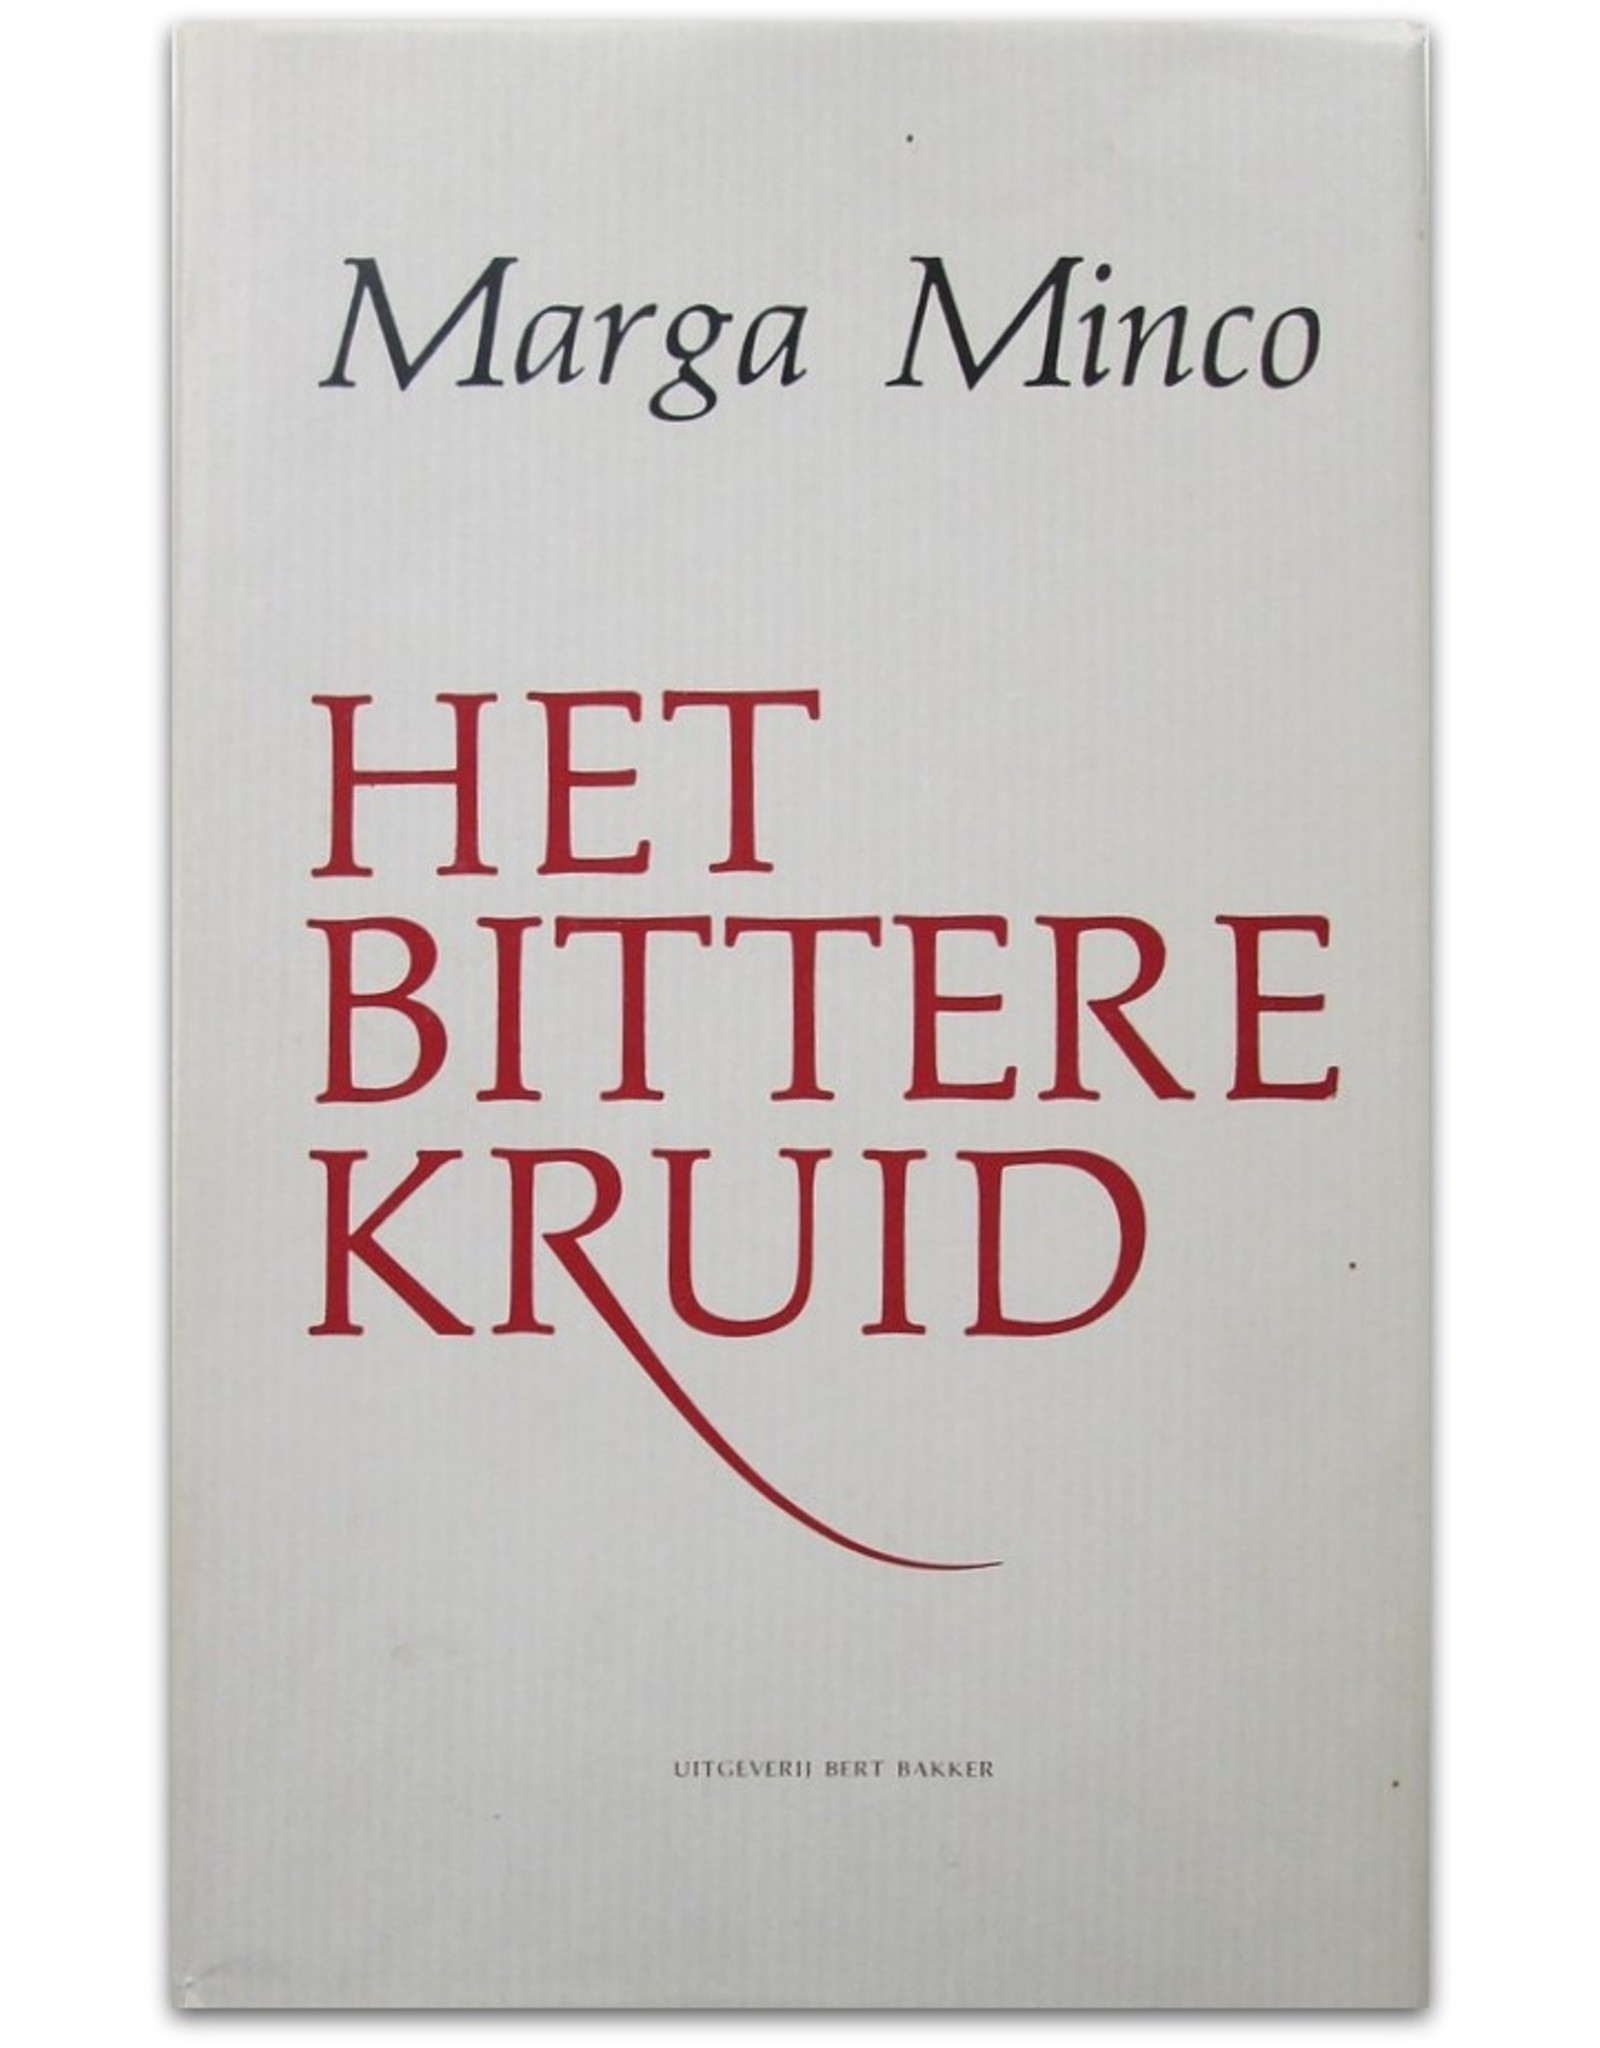 Marga Minco - Het bittere kruid. Een kleine kroniek